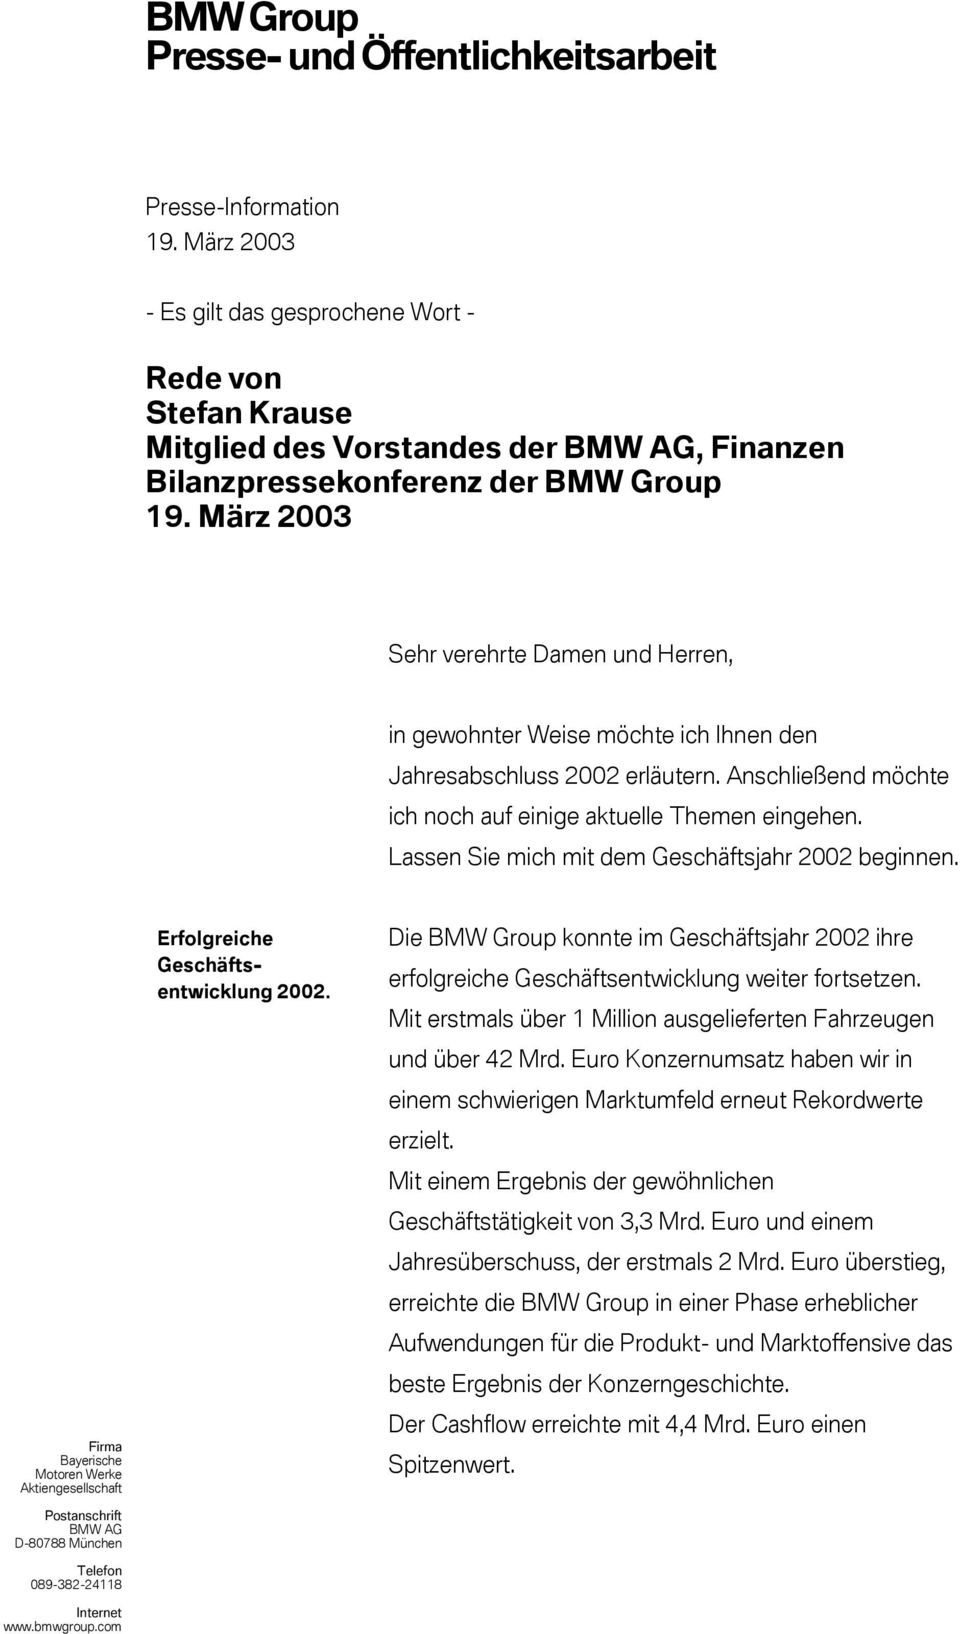 Lassen Sie mich mit dem Geschäftsjahr 2002 beginnen. Firma Bayerische Motoren Werke Aktiengesellschaft Postanschrift BMW AG D-80788 München Telefon 089-382-24118 Internet www.bmwgroup.